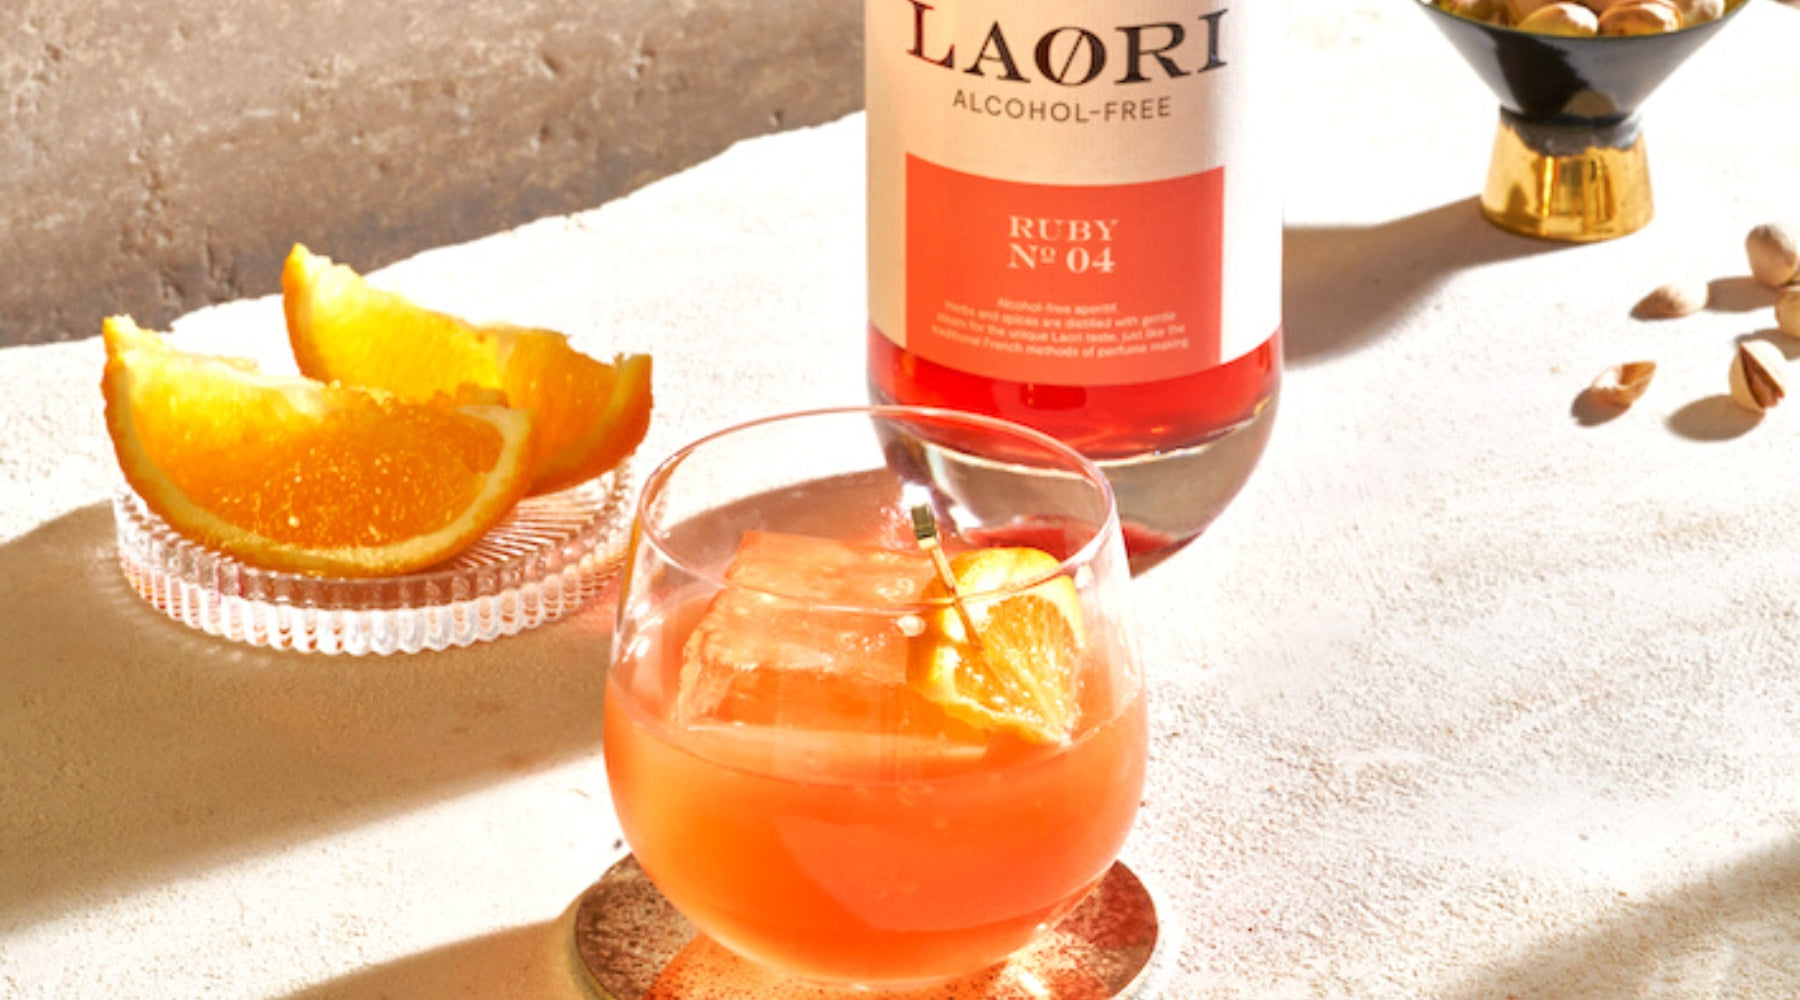 Campari Orangensaft wird mit Laori Ruby No 4 alkoholrei